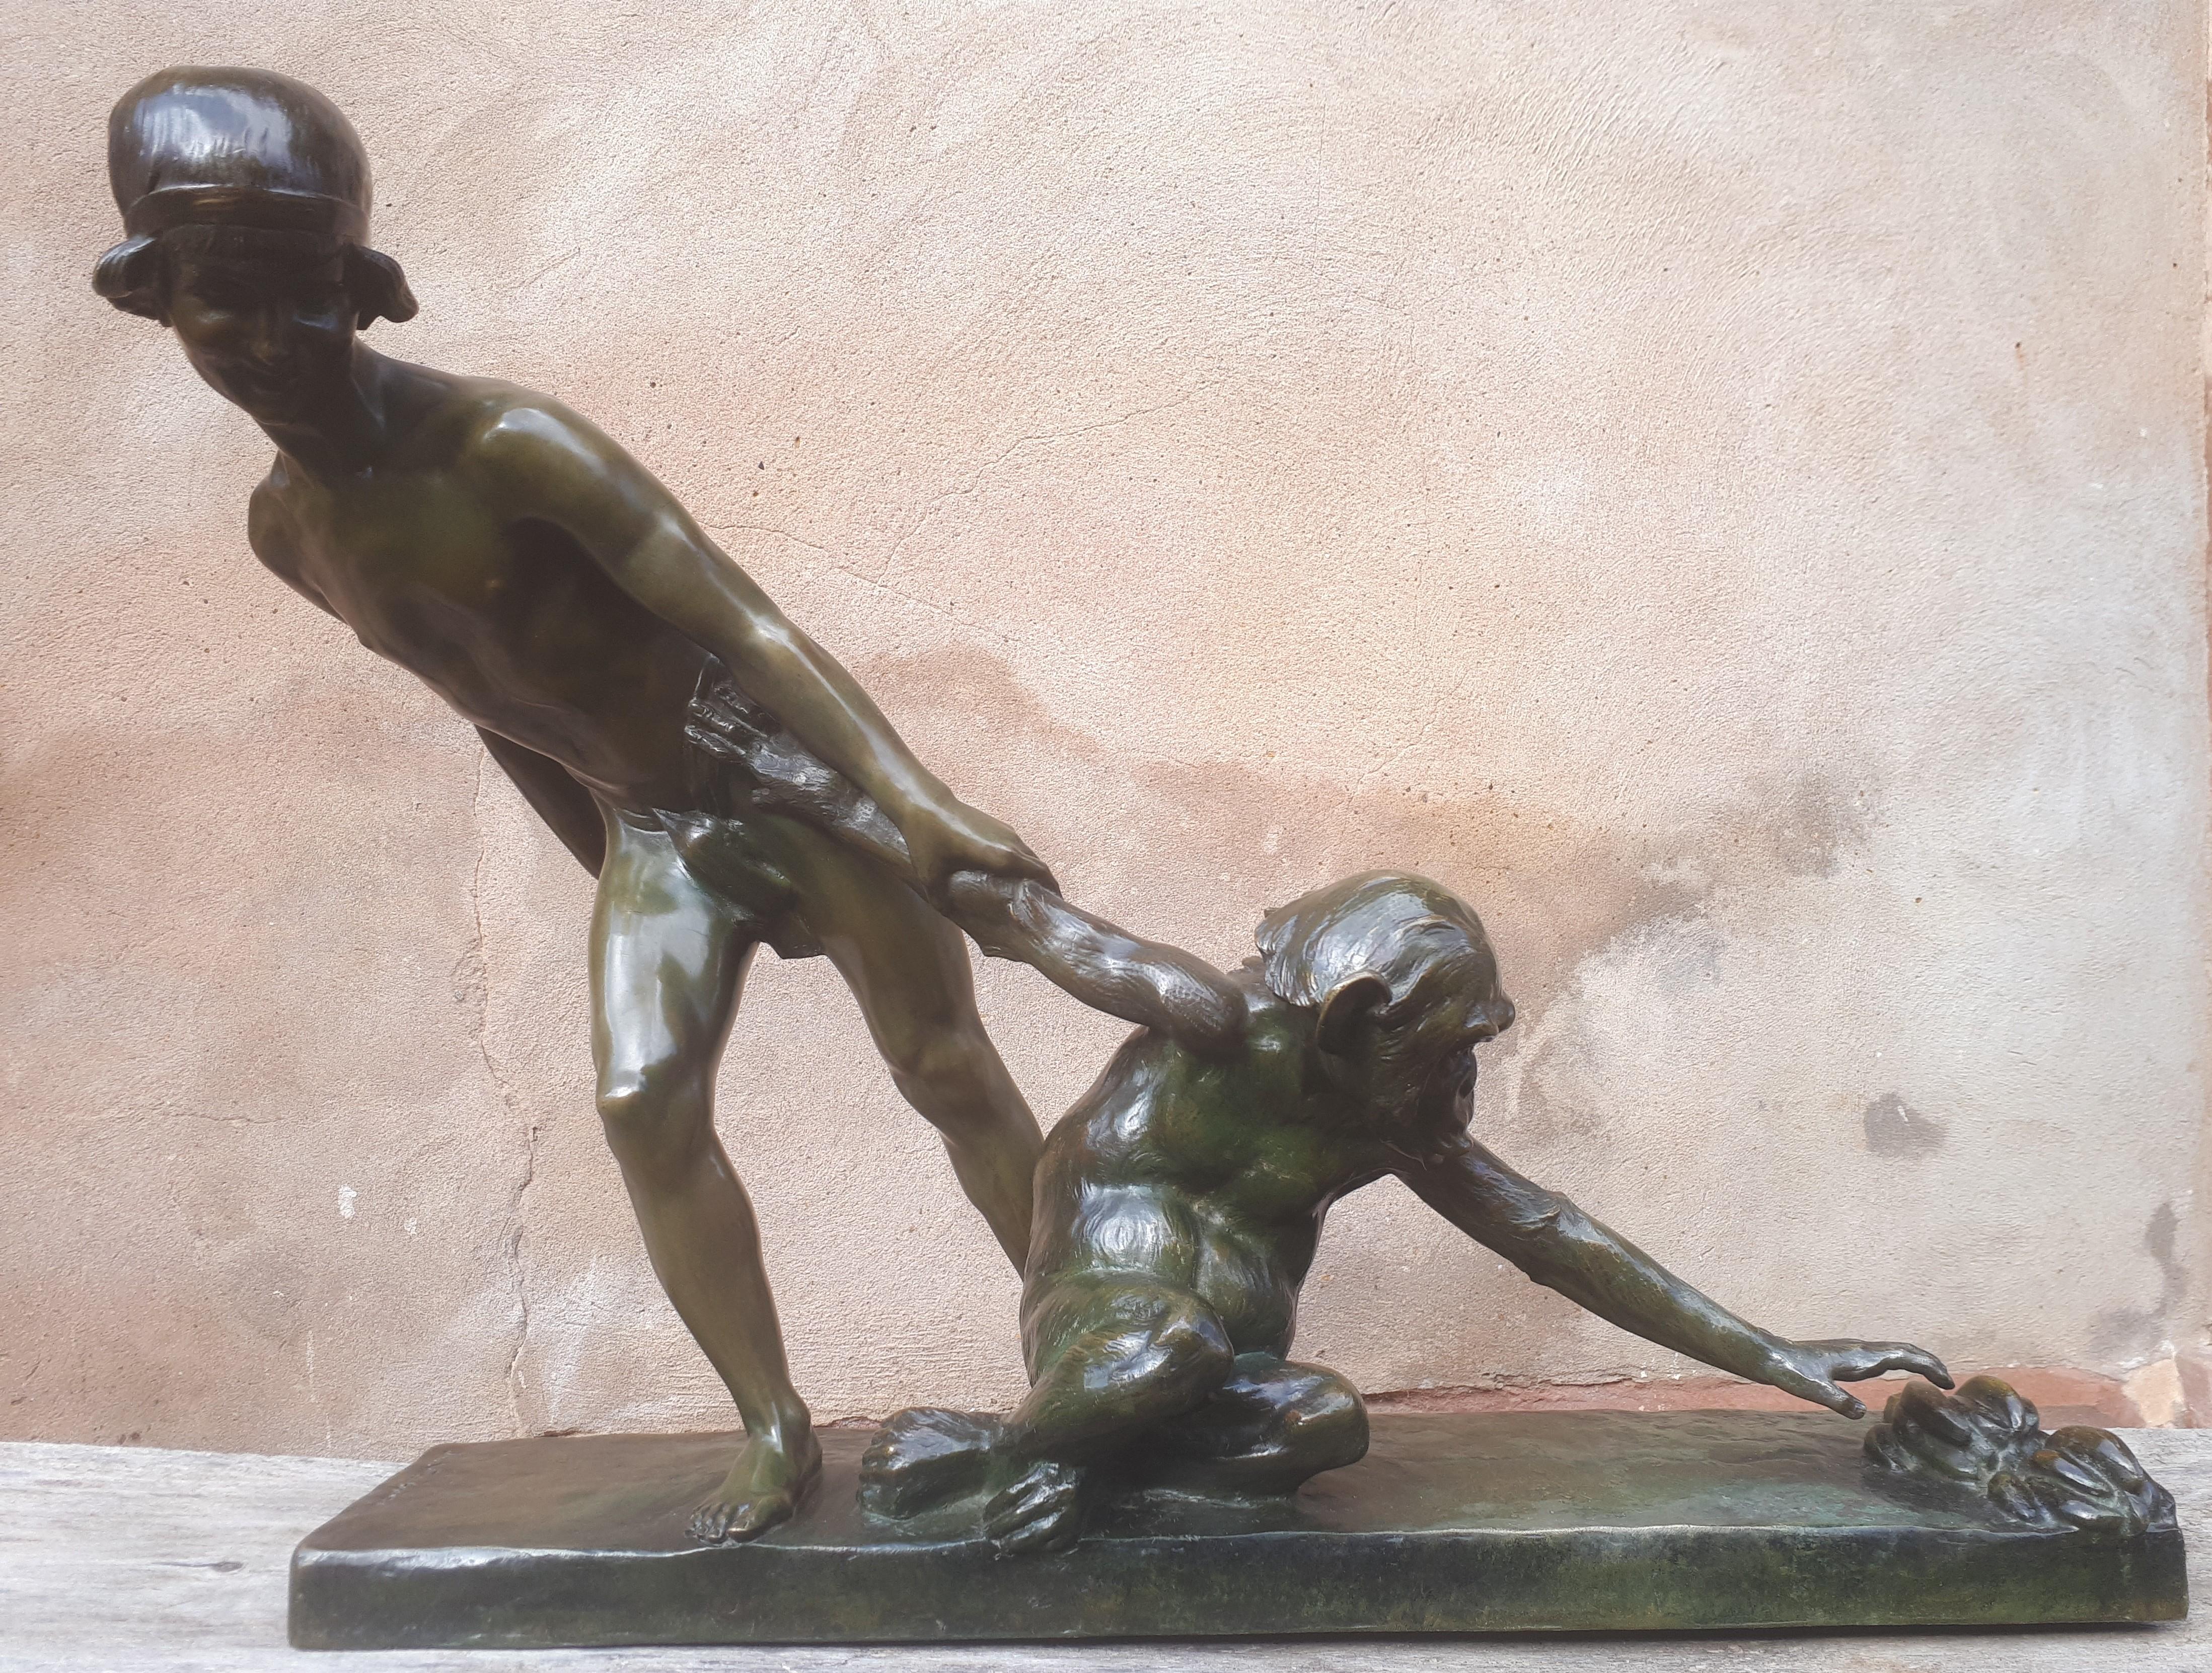 Seltene und wichtige große Bronze mit grüner Patina mit braunen Nuancen, die einen jungen Mann darstellt, der seinen Schimpansen am Arm zieht, damit er nicht nach den beiden Bananenhänden greift, die auf dem Boden liegen.
Eine dynamische Skulptur